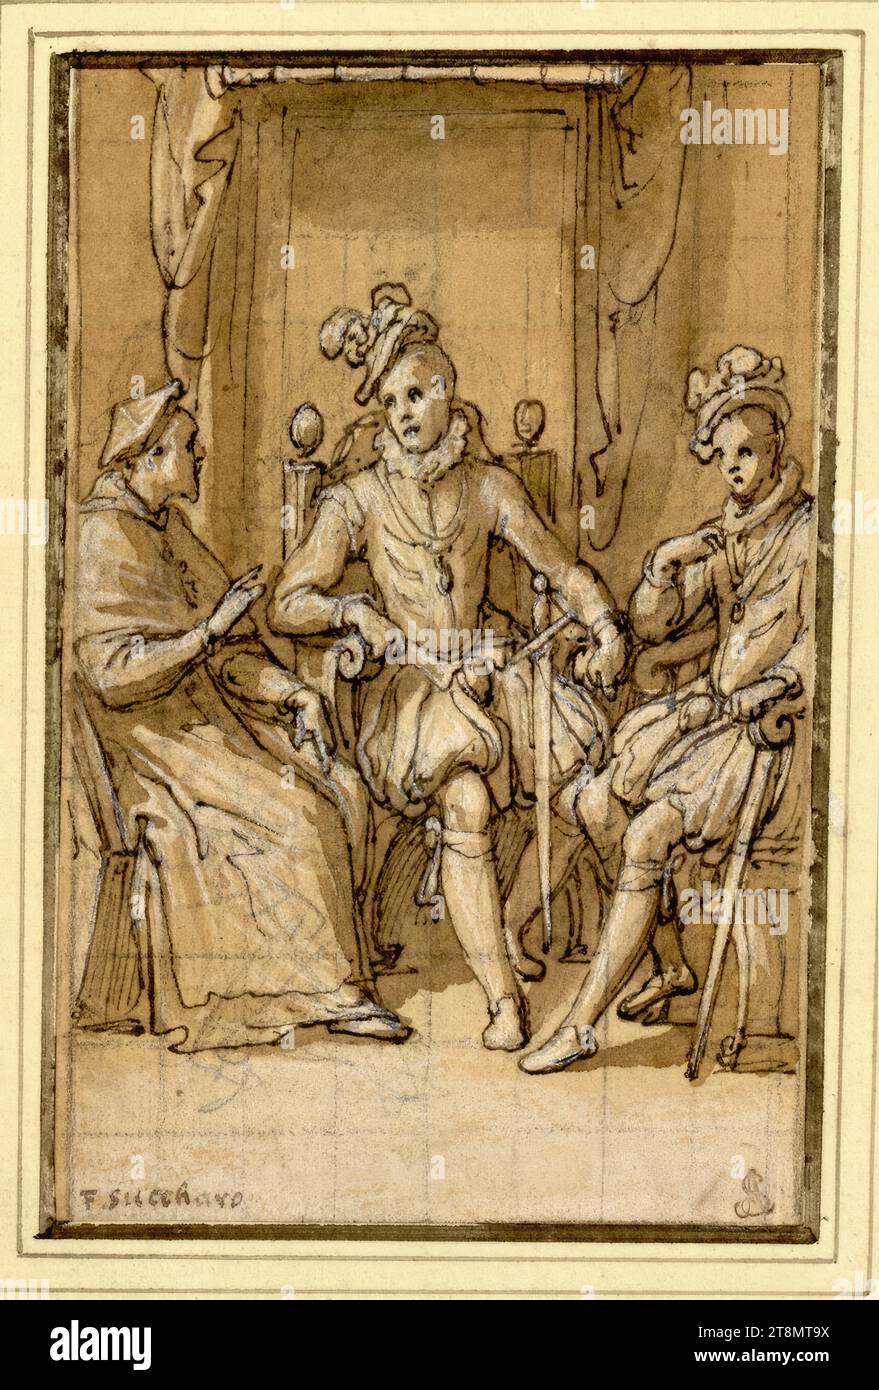 Due giovani nobili siedono di fronte a un dignitario religioso, Federico Zuccari (Sant' Angelo in vado 1540/41 - 1609 Ancona), c. 1565, disegno, gesso; piuma; inchiostro; lavato; accresciuto con bianco; squadrato con gesso; carta marrone, 14,8 x 9,6 cm, r.r. Duca Alberto di Sassonia-Teschen, in basso a sinistra nell'inchiostro successivo, 'F. Succharo Foto Stock